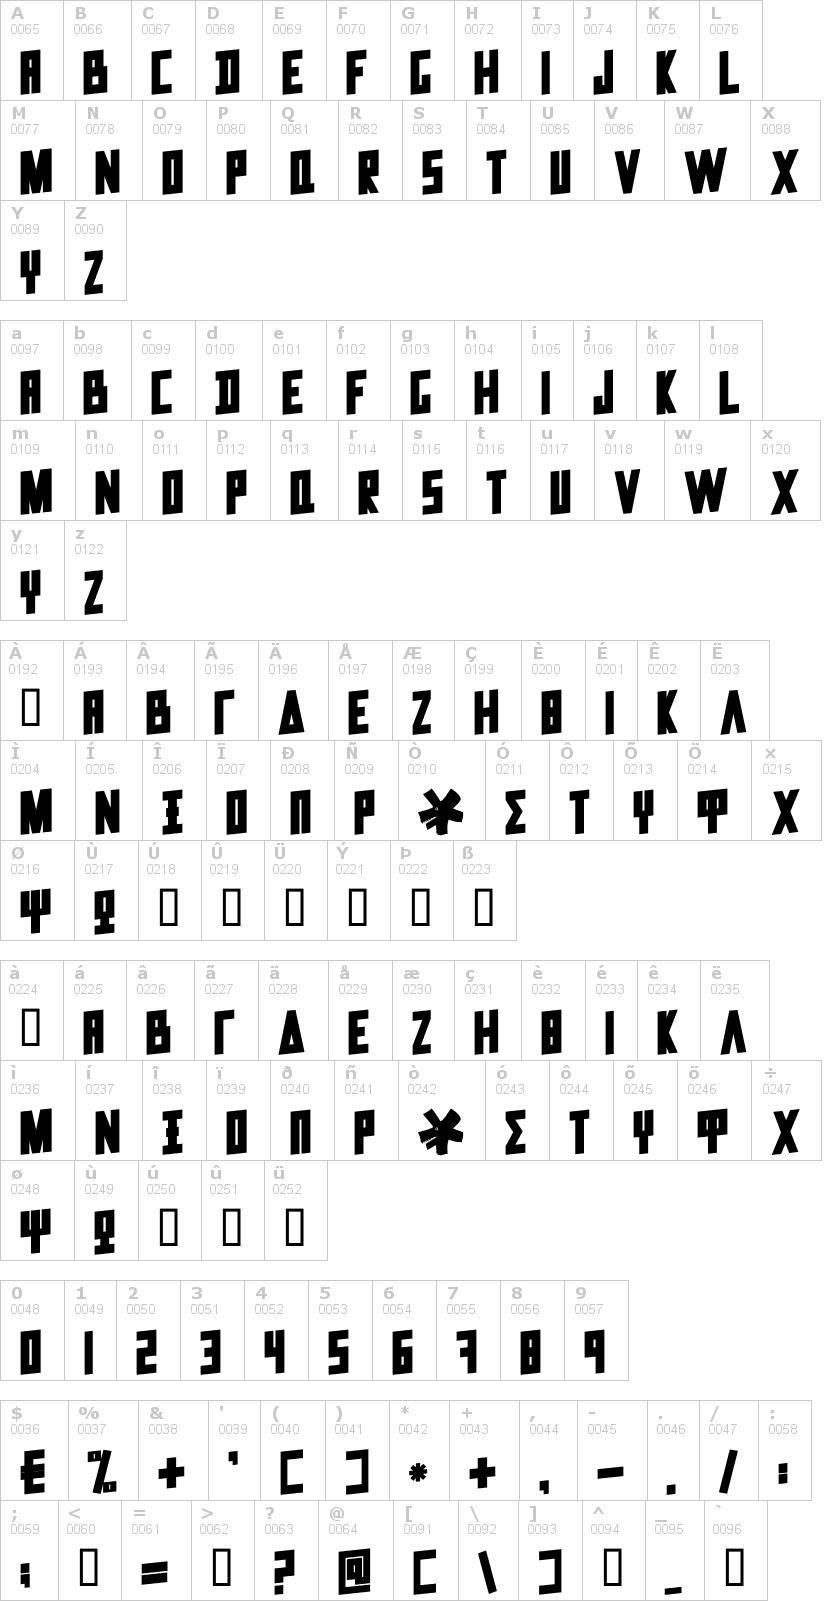 Lettere dell'alfabeto del font data-trash con le quali è possibile realizzare adesivi prespaziati